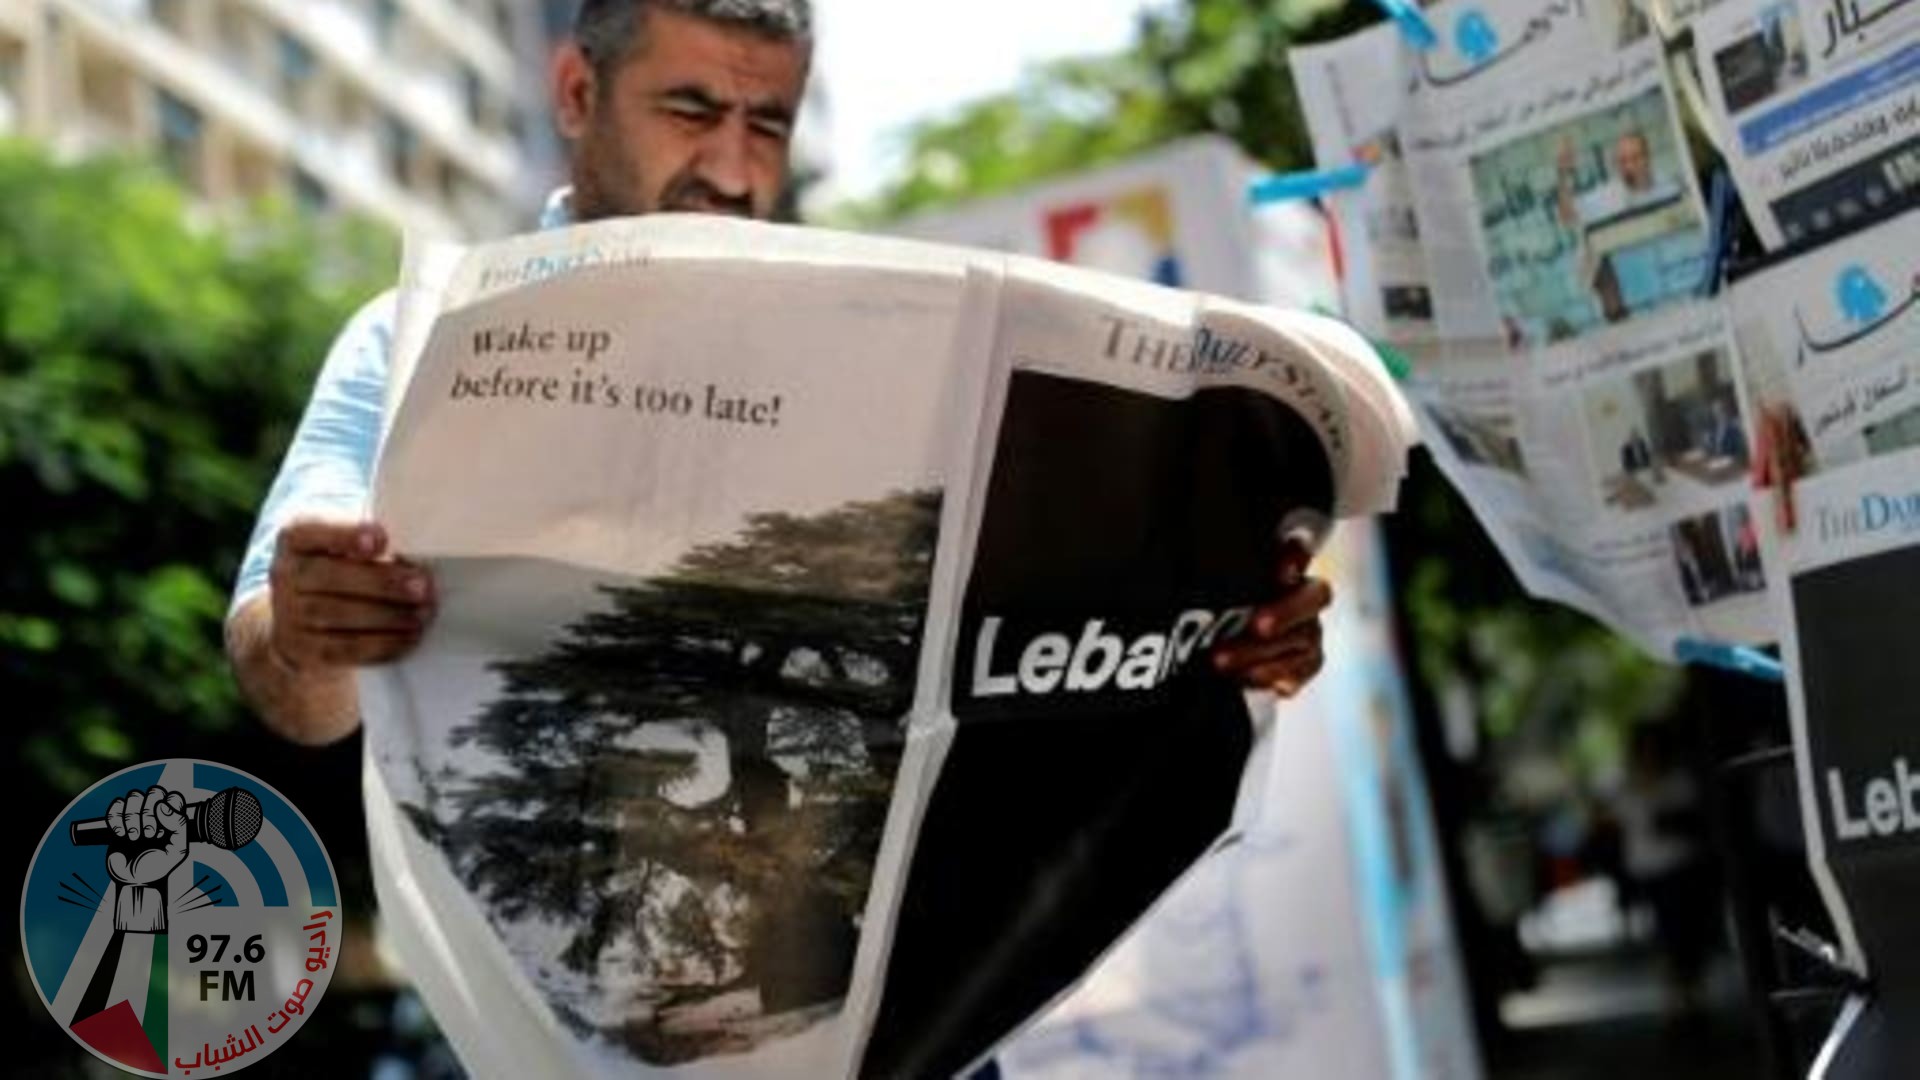 صحيفة دايلي ستار الصادرة بالانكليزية في لبنان تسرّح جميع موظفيها